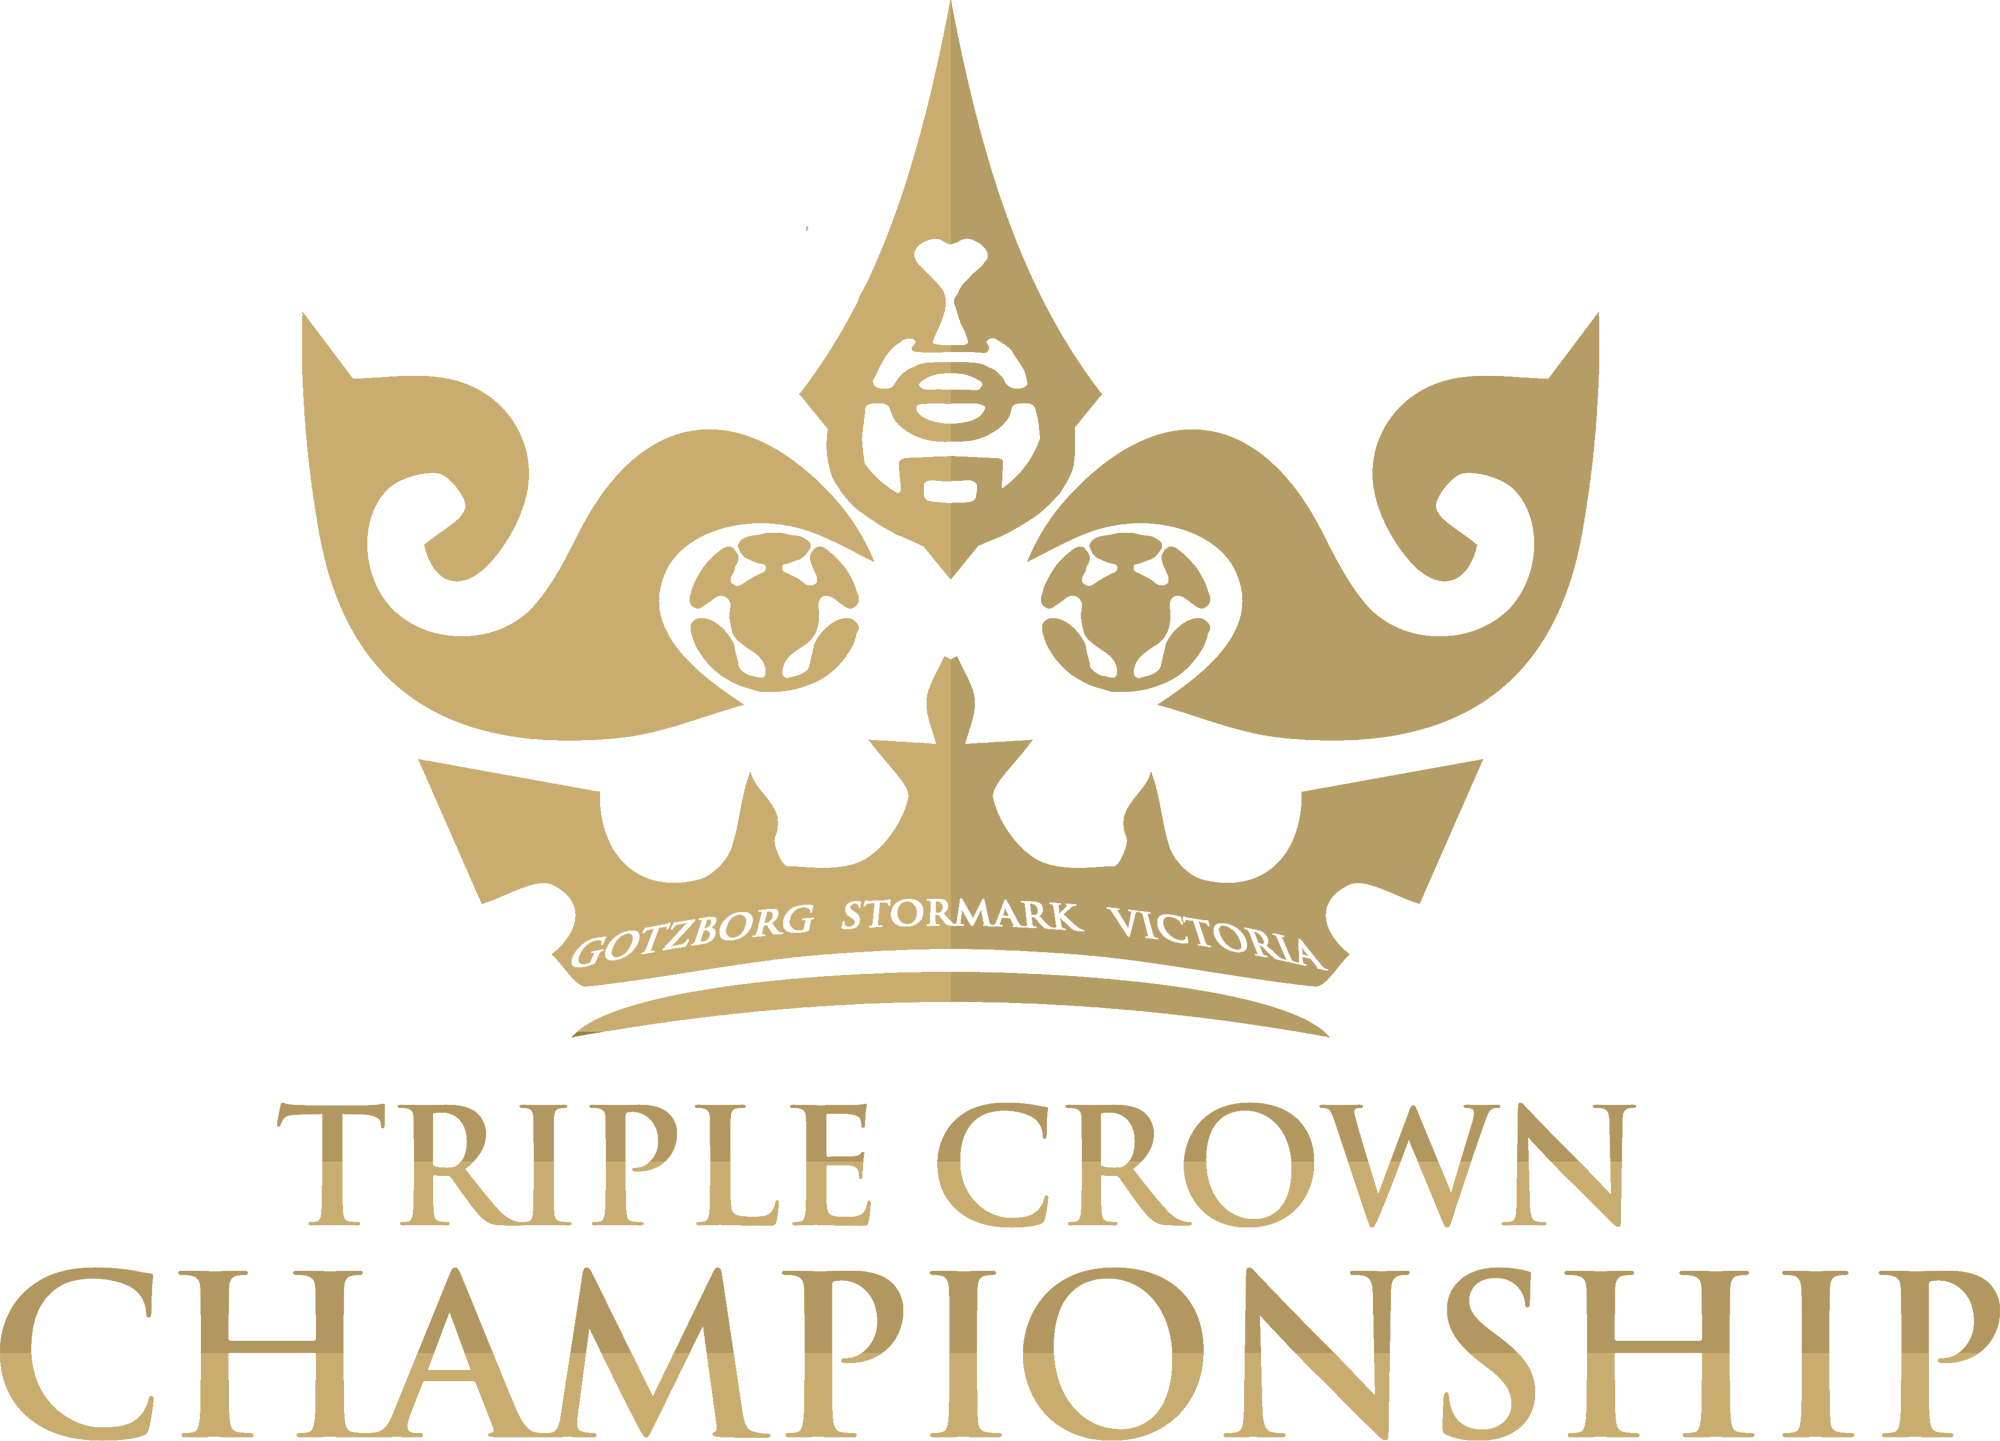 Crown Logo Png